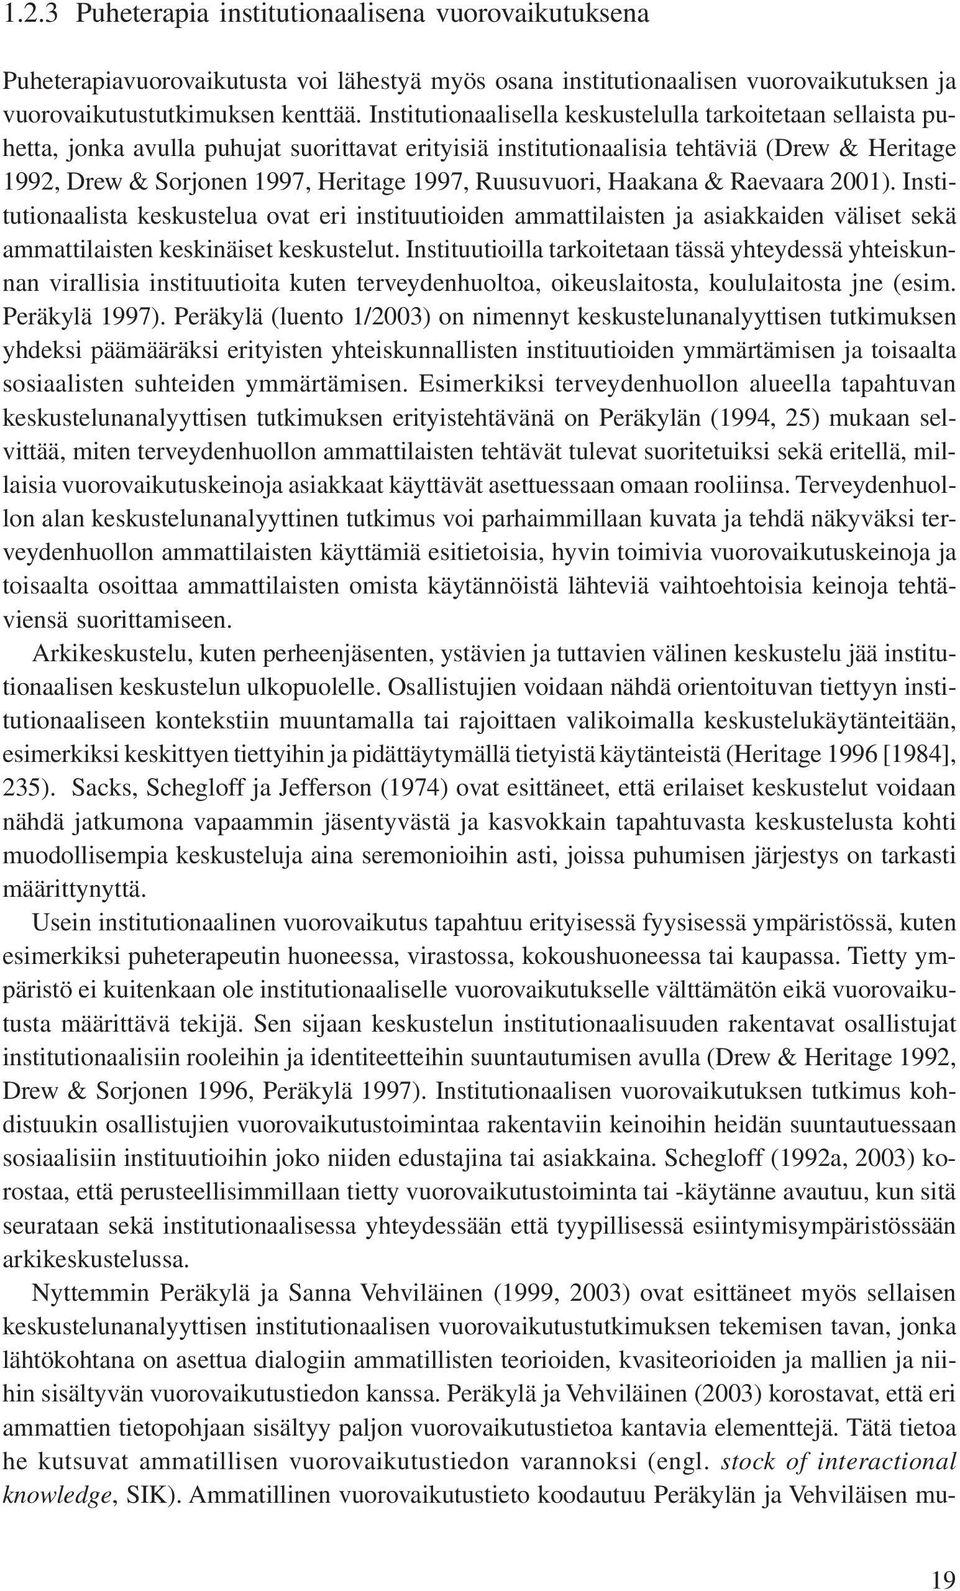 Ruusuvuori, Haakana & Raevaara 2001). Institutionaalista keskustelua ovat eri instituutioiden ammattilaisten ja asiakkaiden väliset sekä ammattilaisten keskinäiset keskustelut.